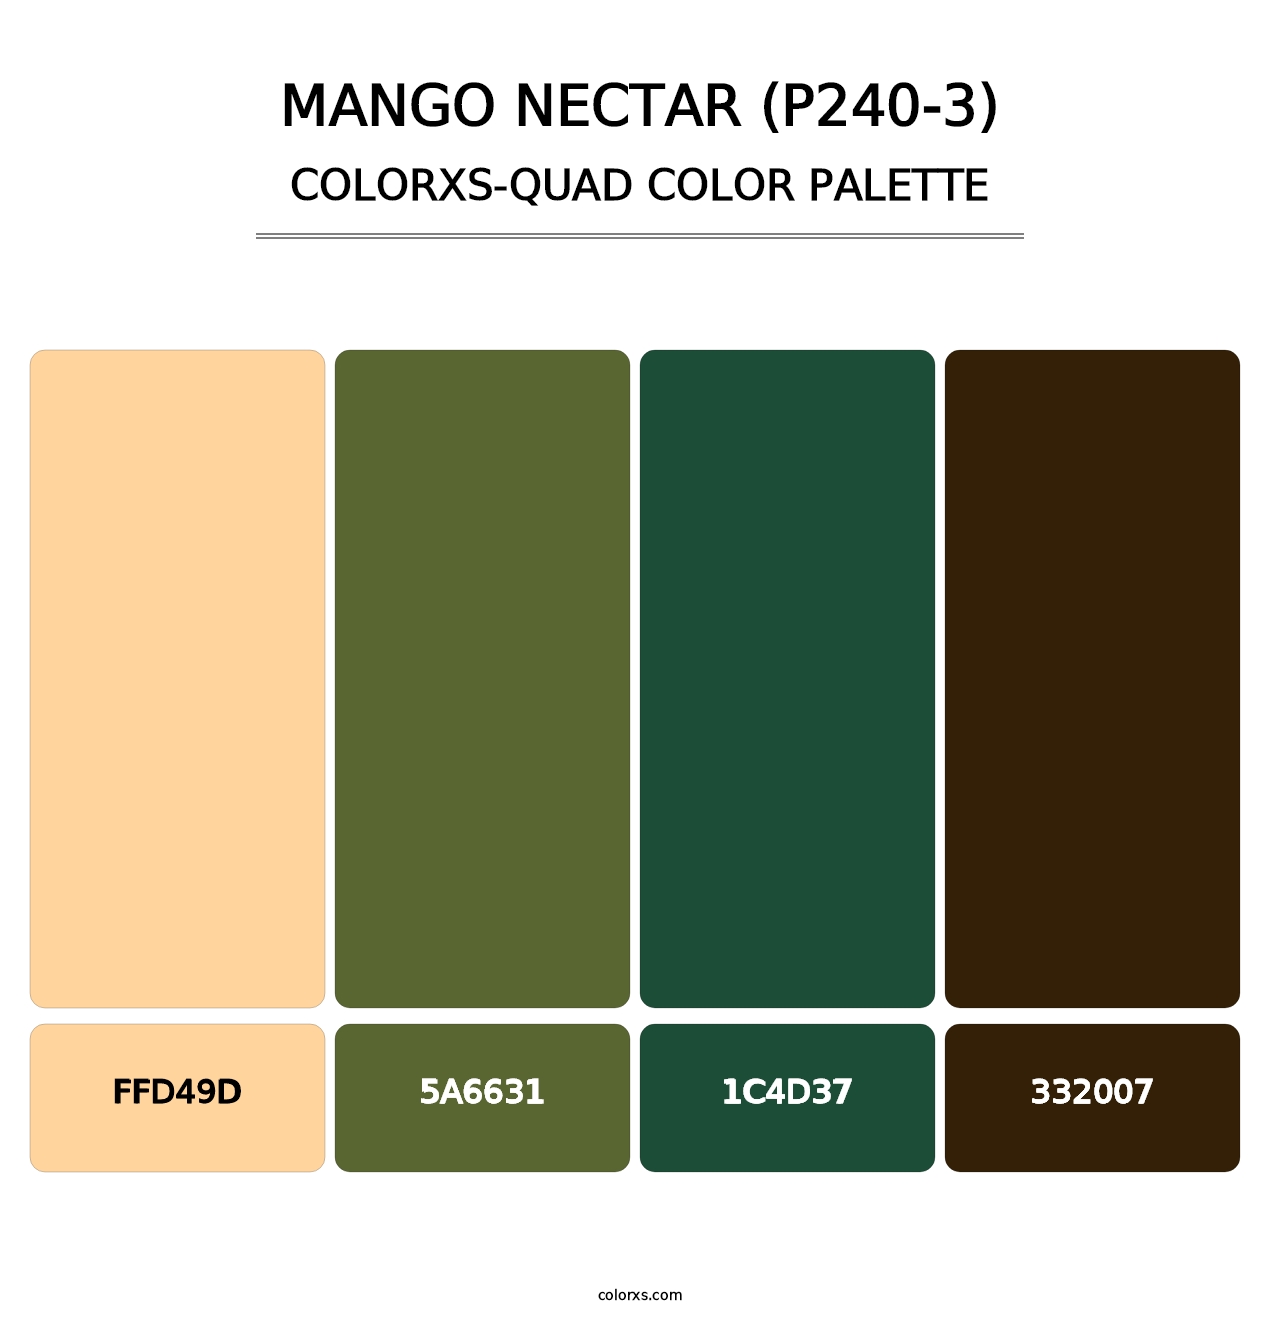 Mango Nectar (P240-3) - Colorxs Quad Palette